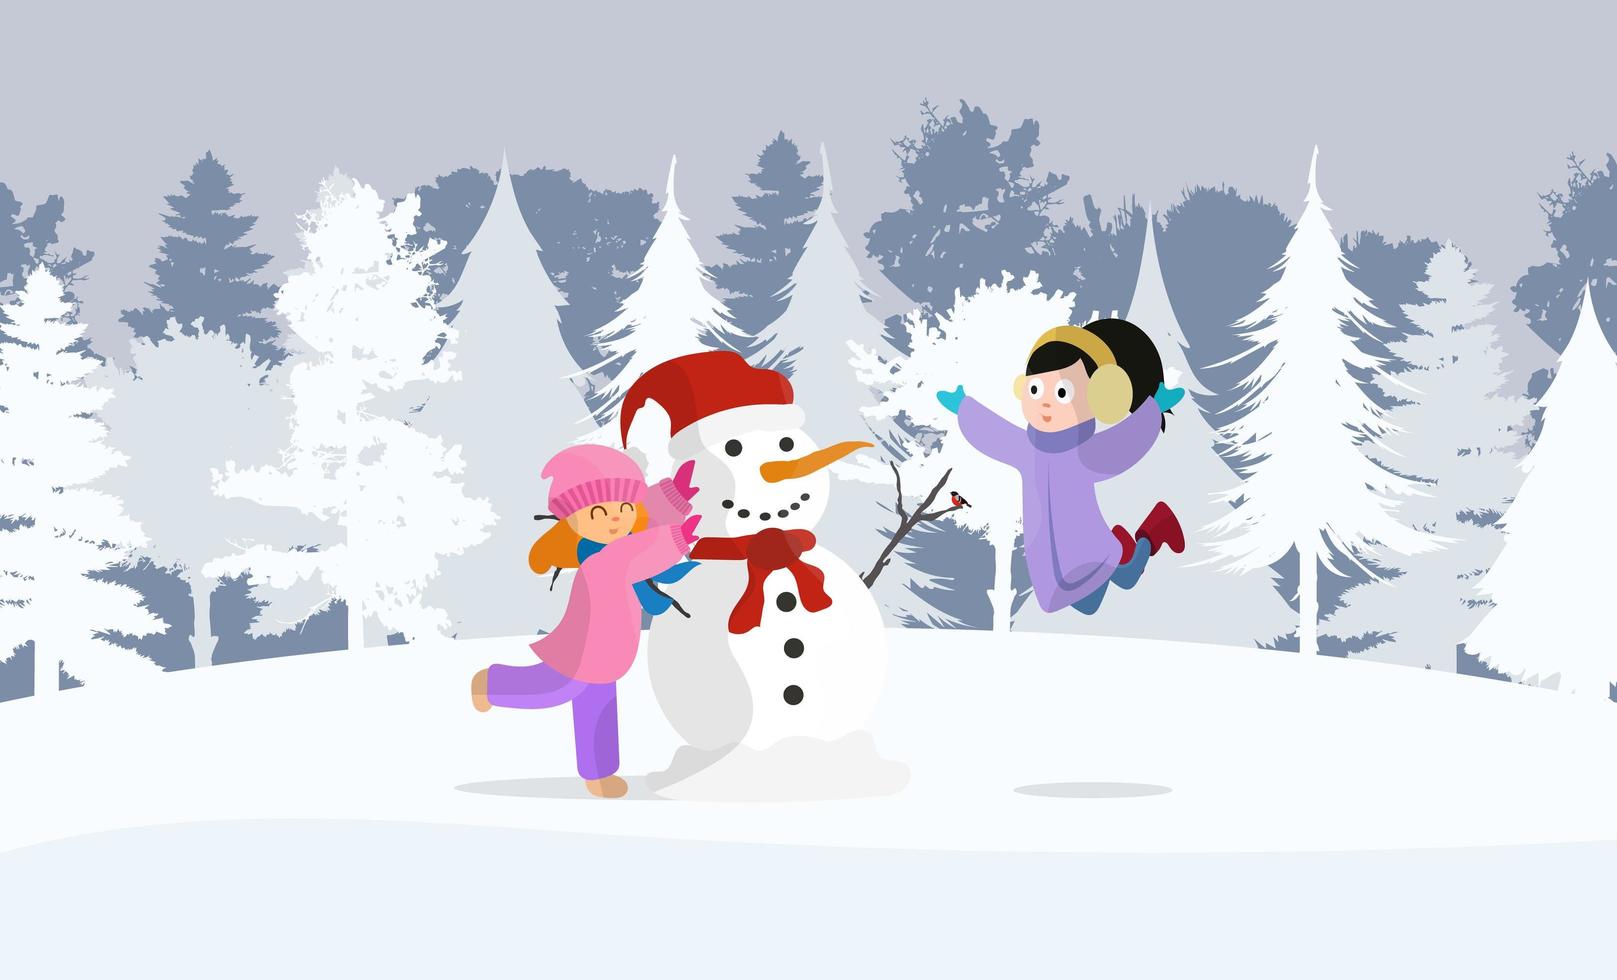 niñas felices en invierno juegan muñeco de nieve. Apto para postales y libros. bosque nevado, chicas con ropa de abrigo, muñeco de nieve de año nuevo. vector. vector